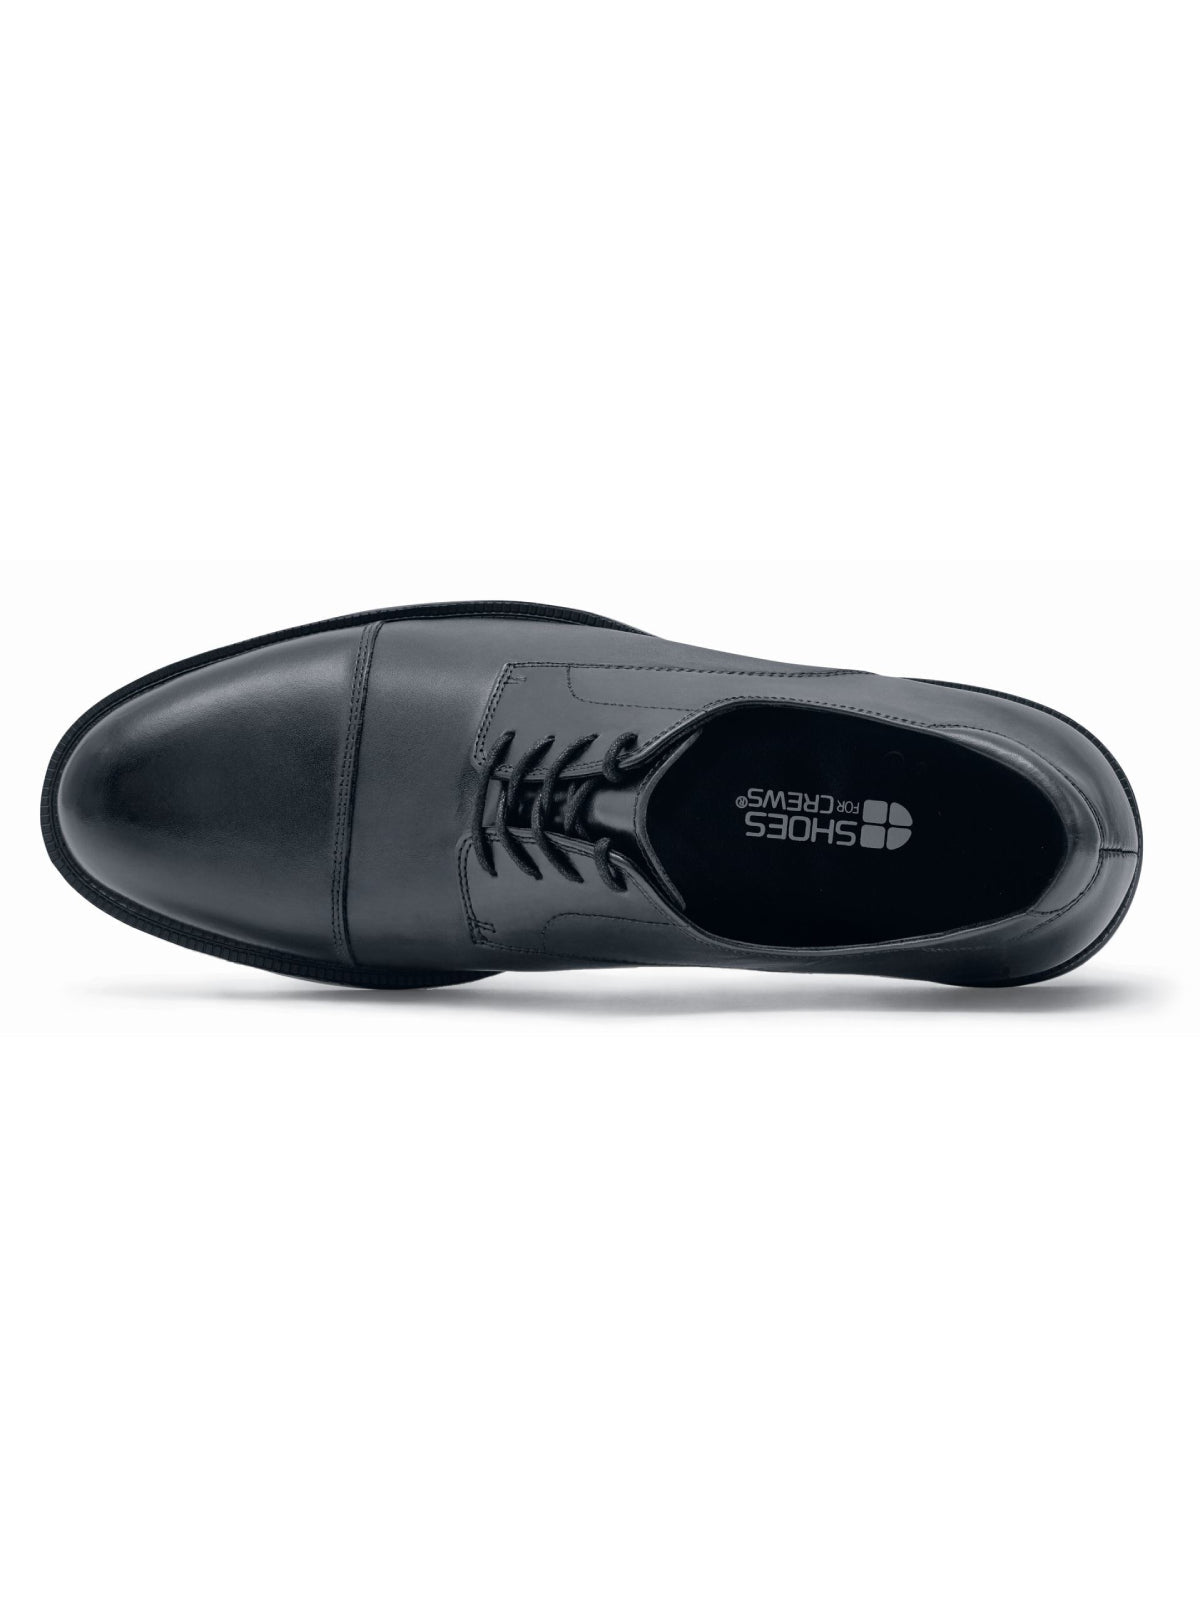 Men's Work Shoe Senator Black by Shoes For Crews -  ChefsCotton